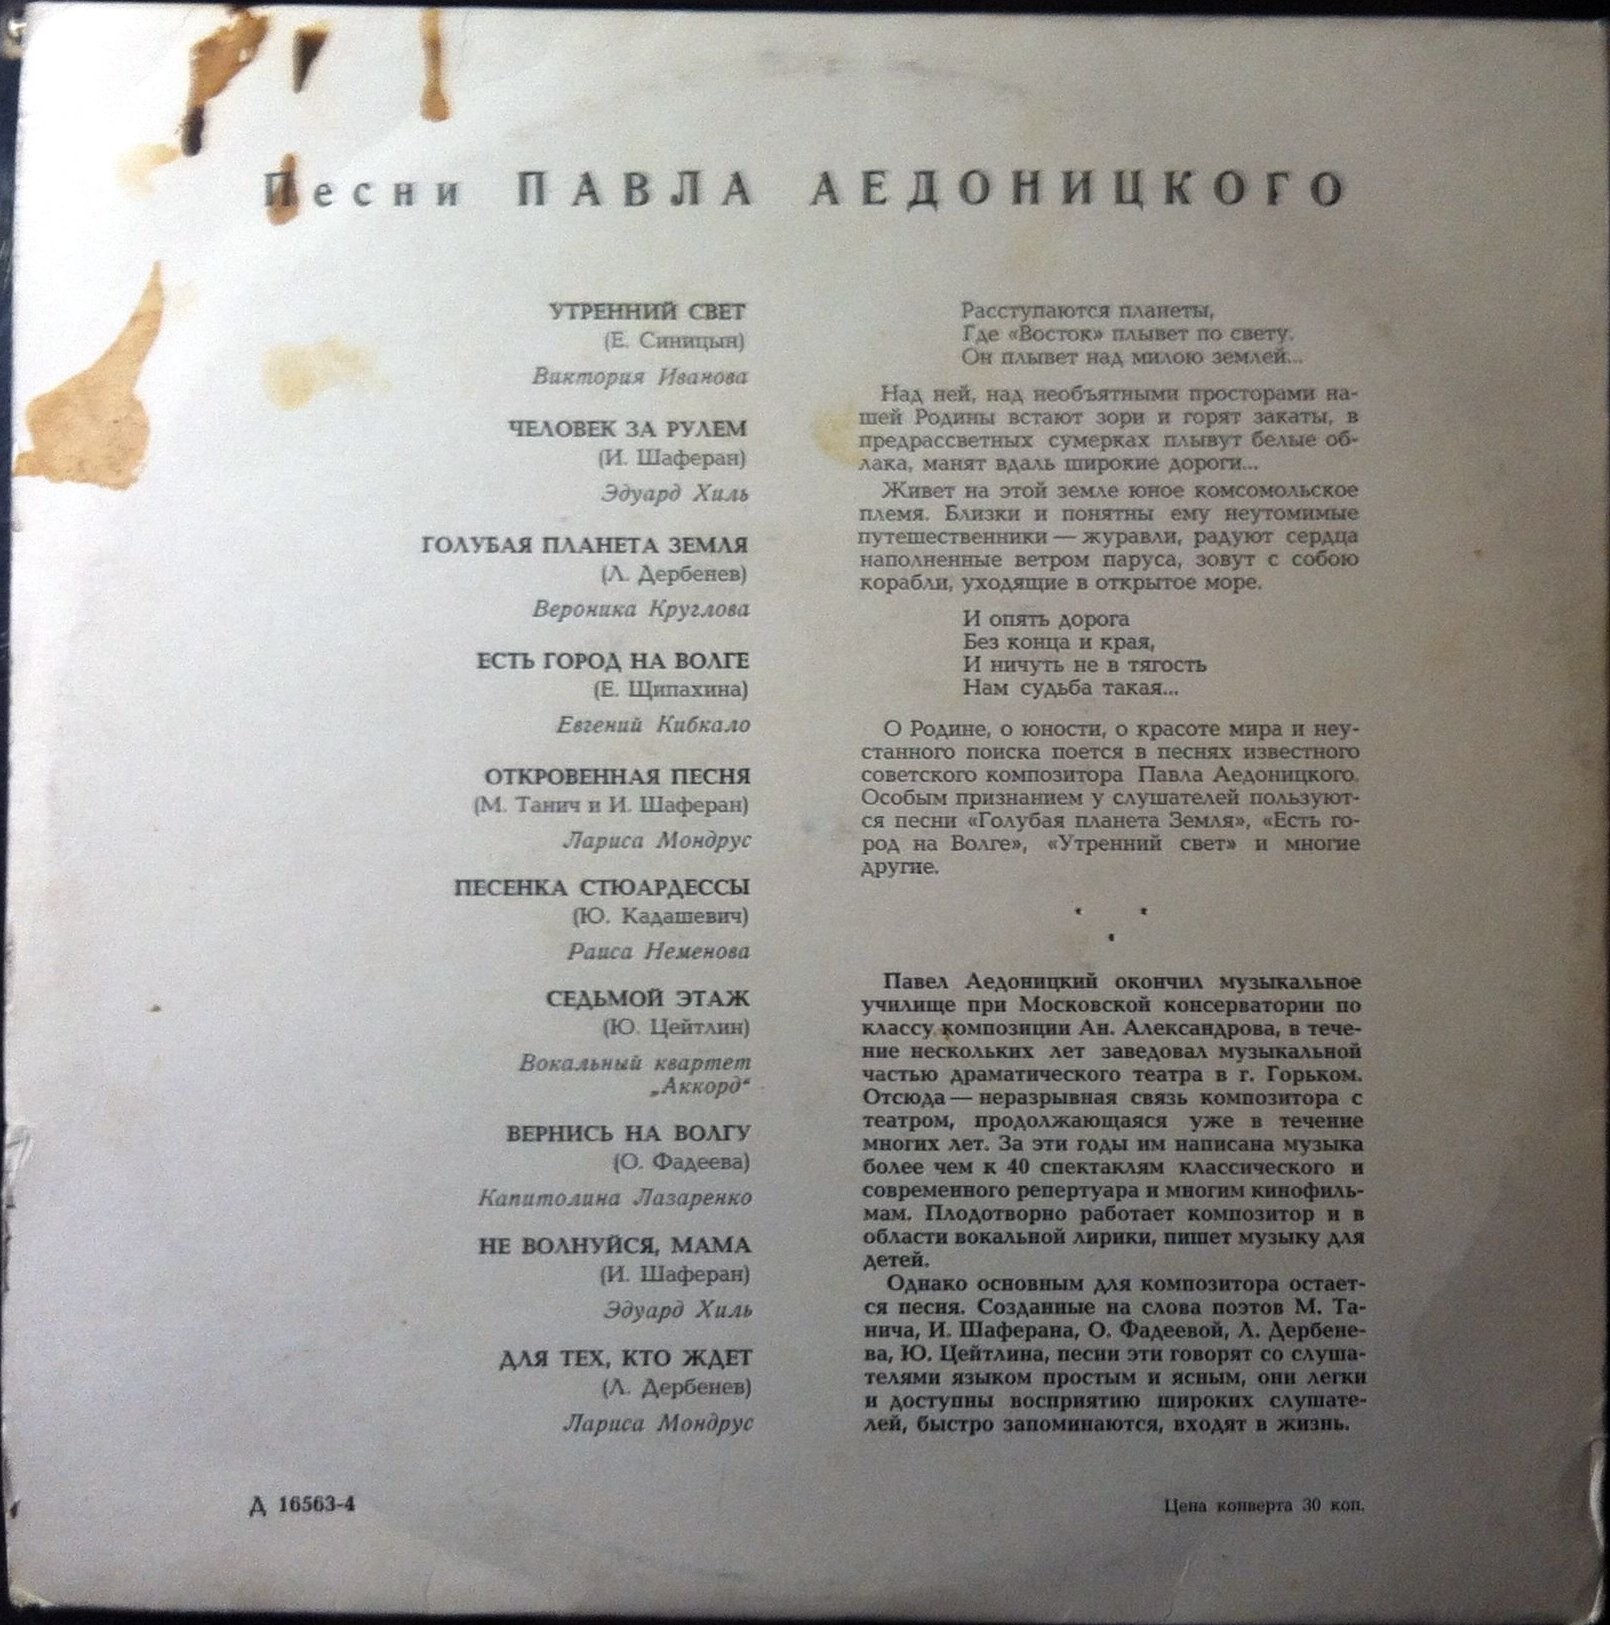 Лирические песни П. Аедоницкого